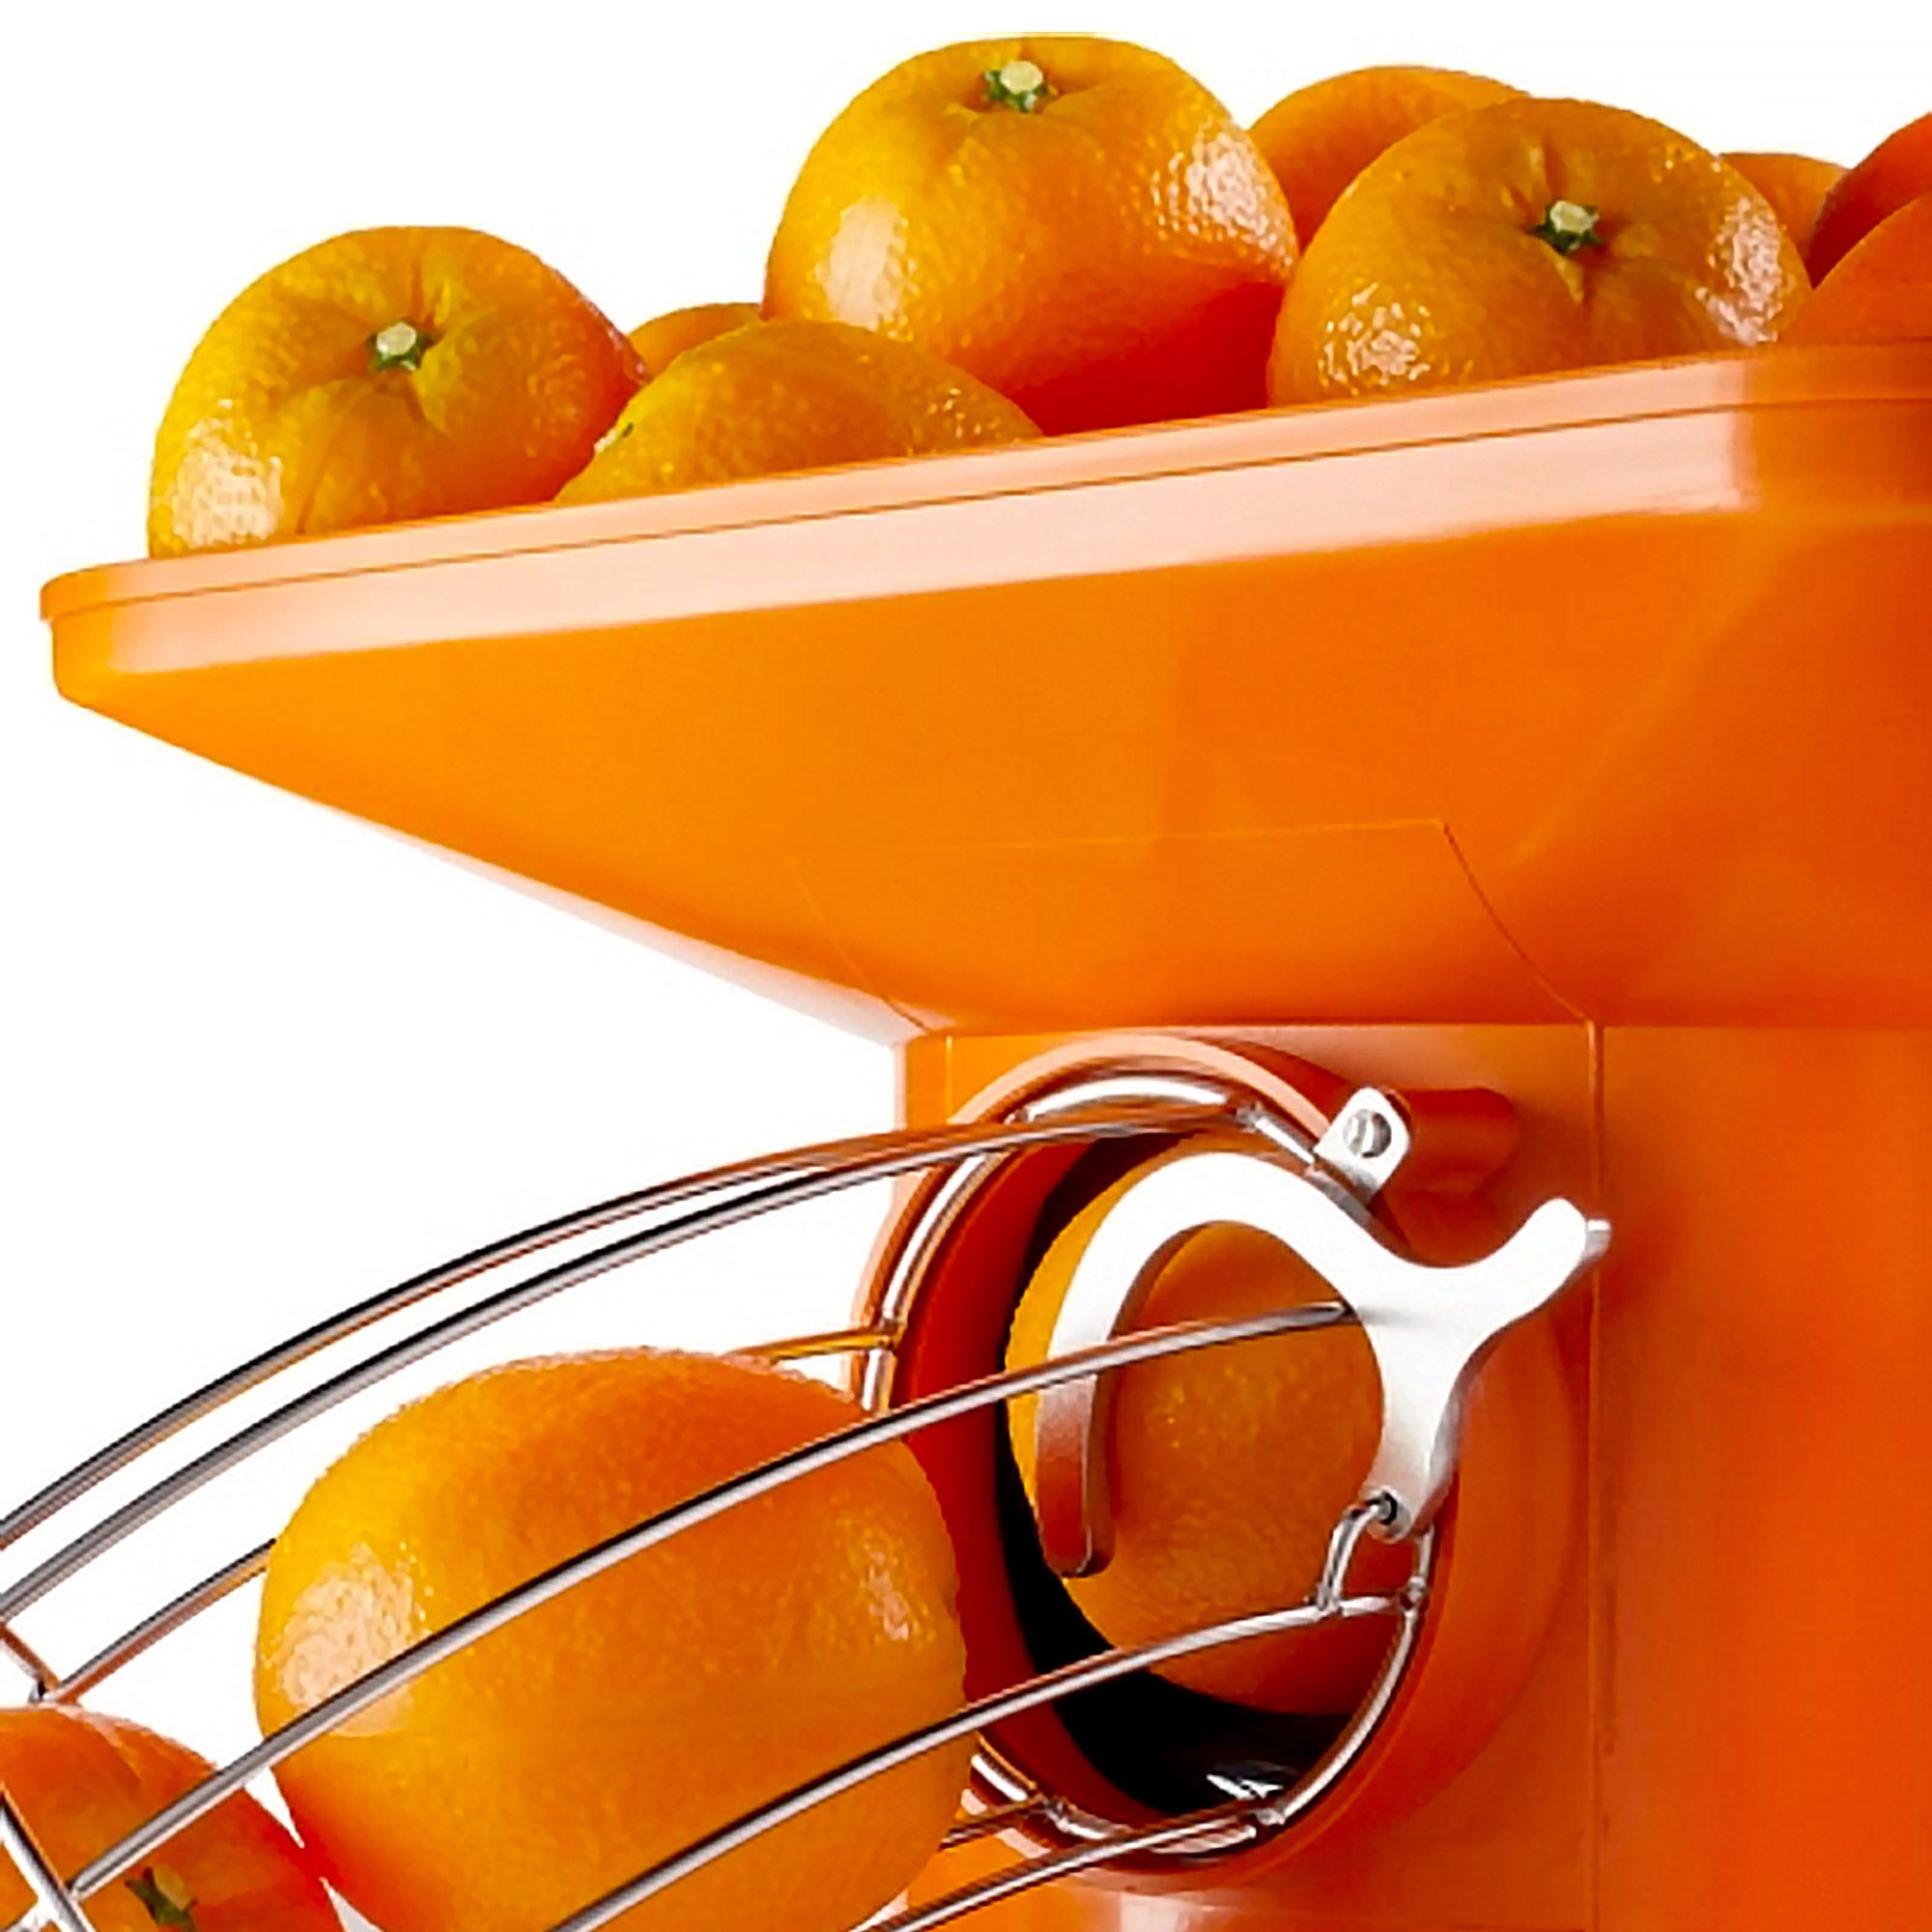 Exprimidor Naranjas Eléctrico Automático L83690 Envío Hoy